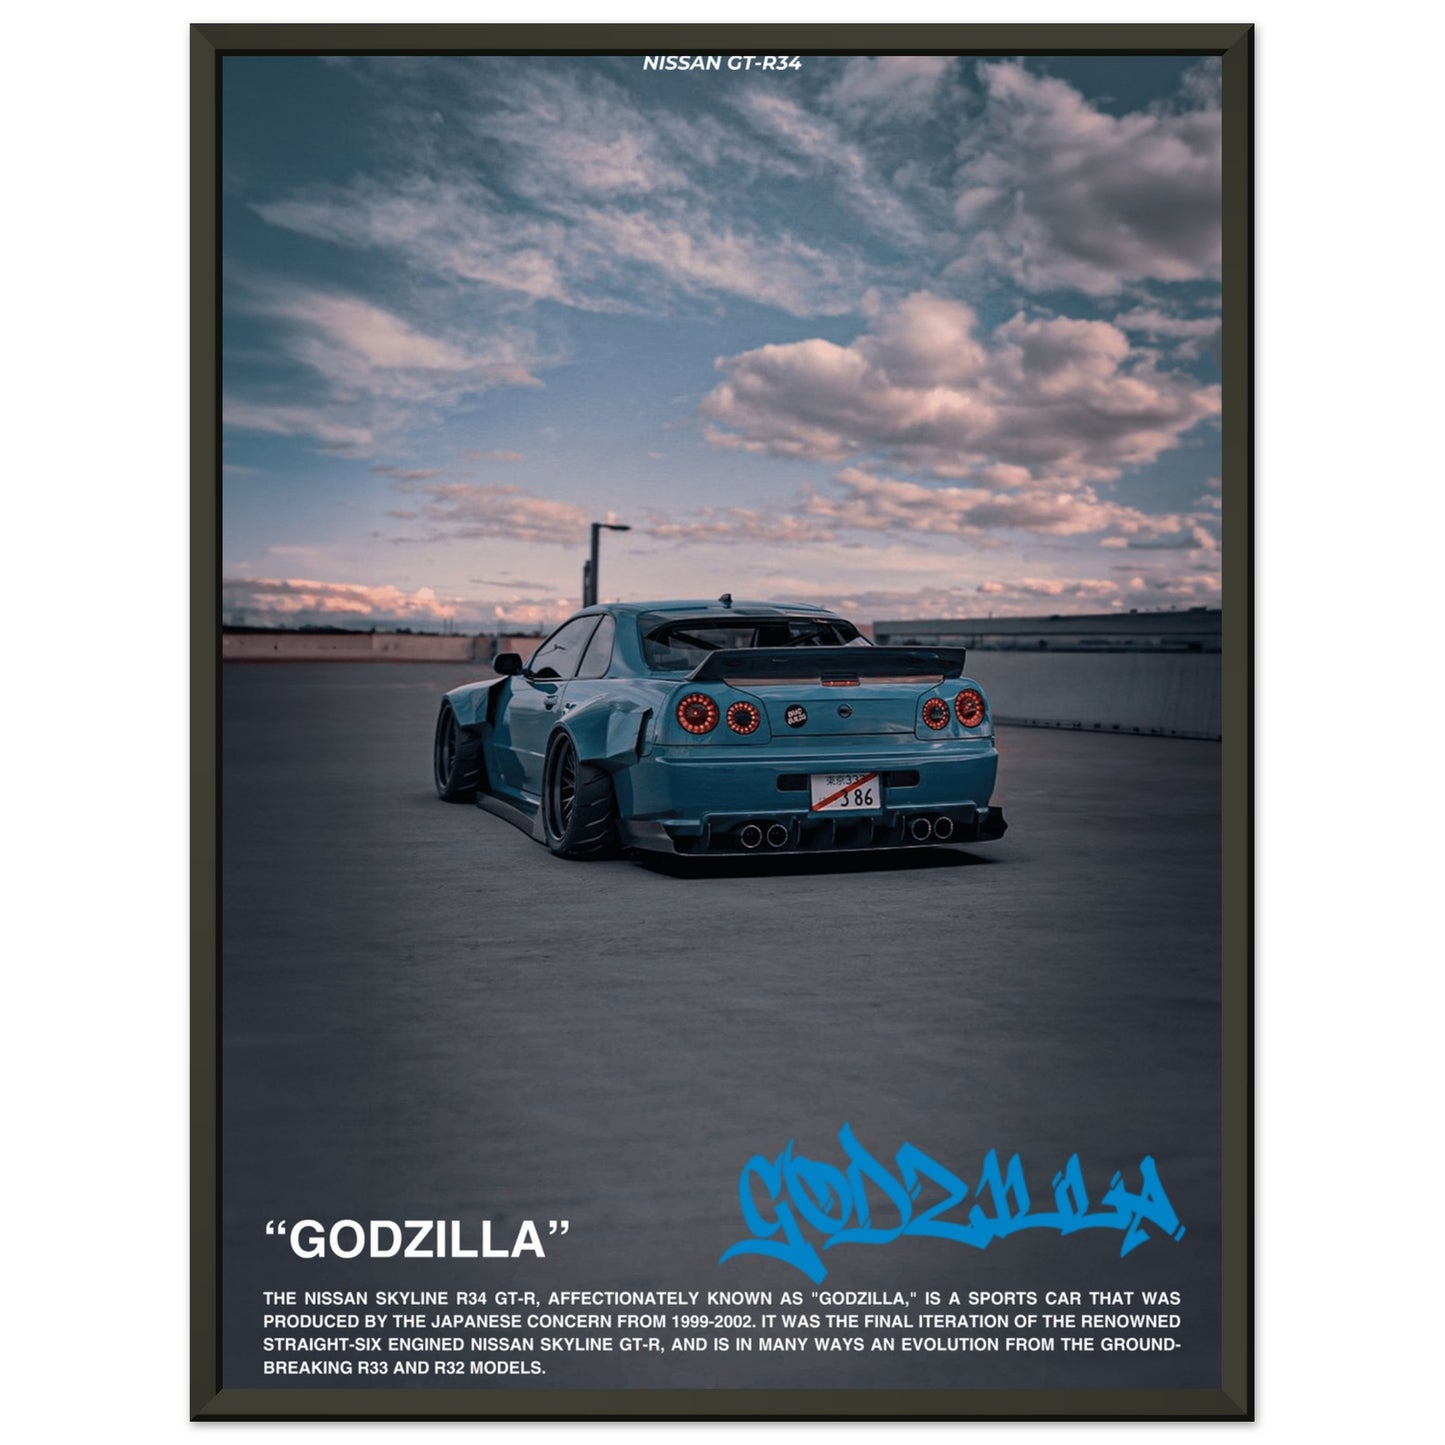 Nissan GTR-34 "Godzilla"